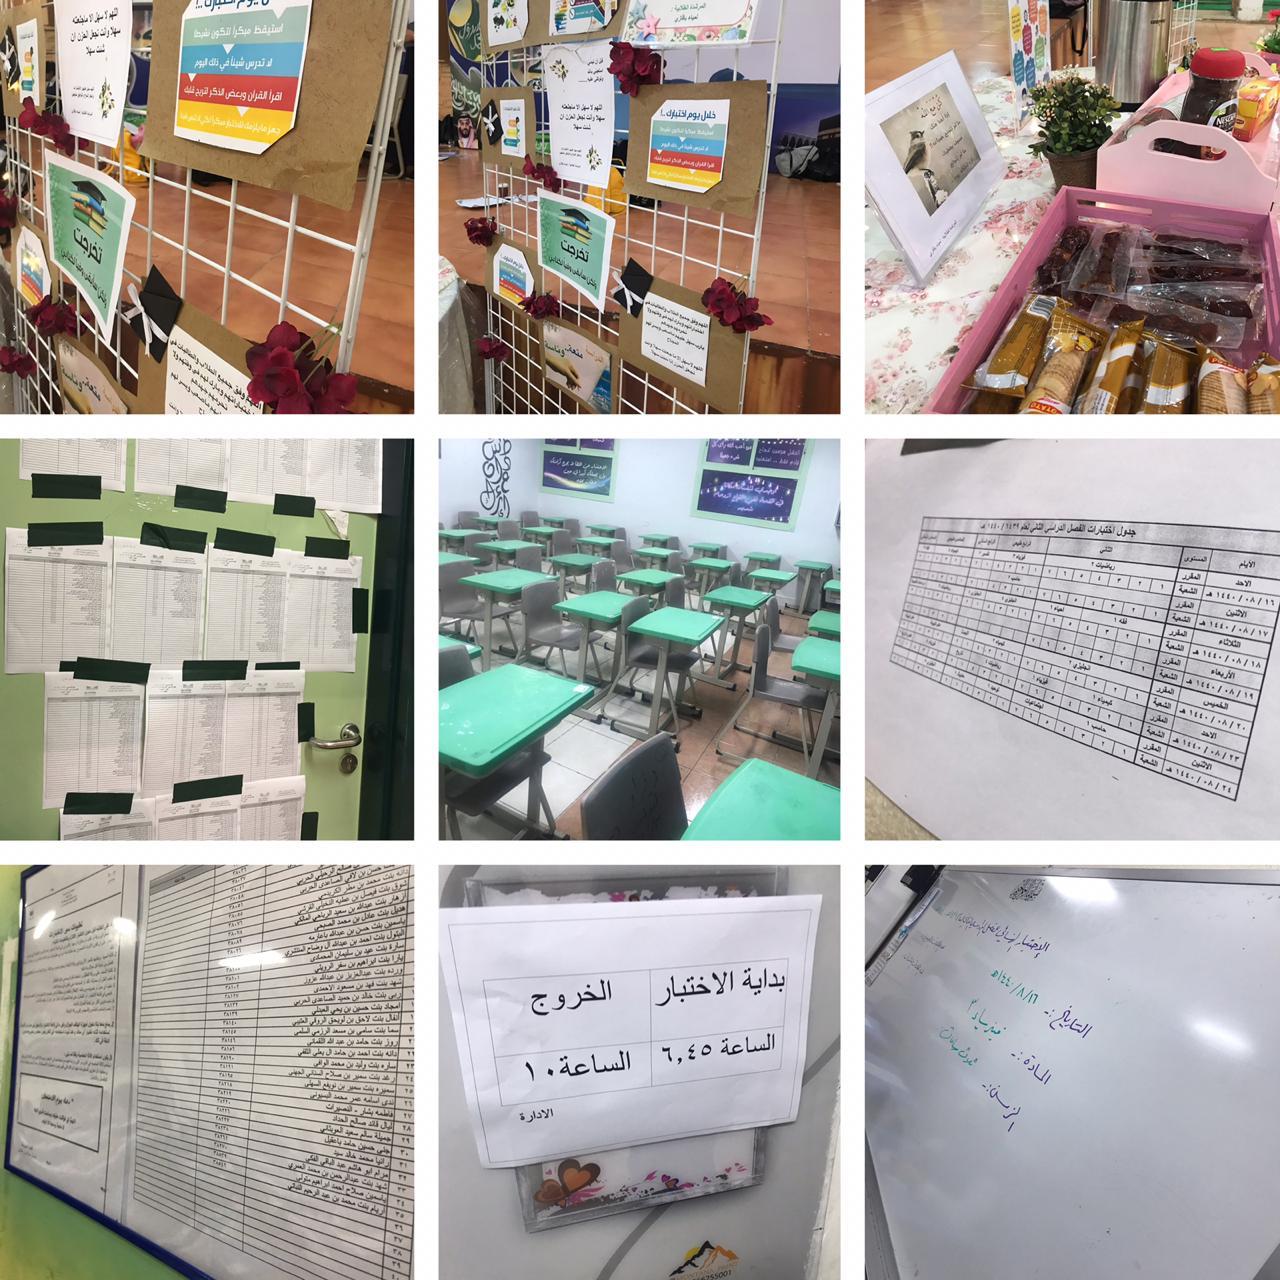 حزمة من البرامج التوعوية والنشرات التثقيفية استعداداً لاختبارات الفصل الدراسي الثاني بمدارس مكتب تعليم شمال مكة